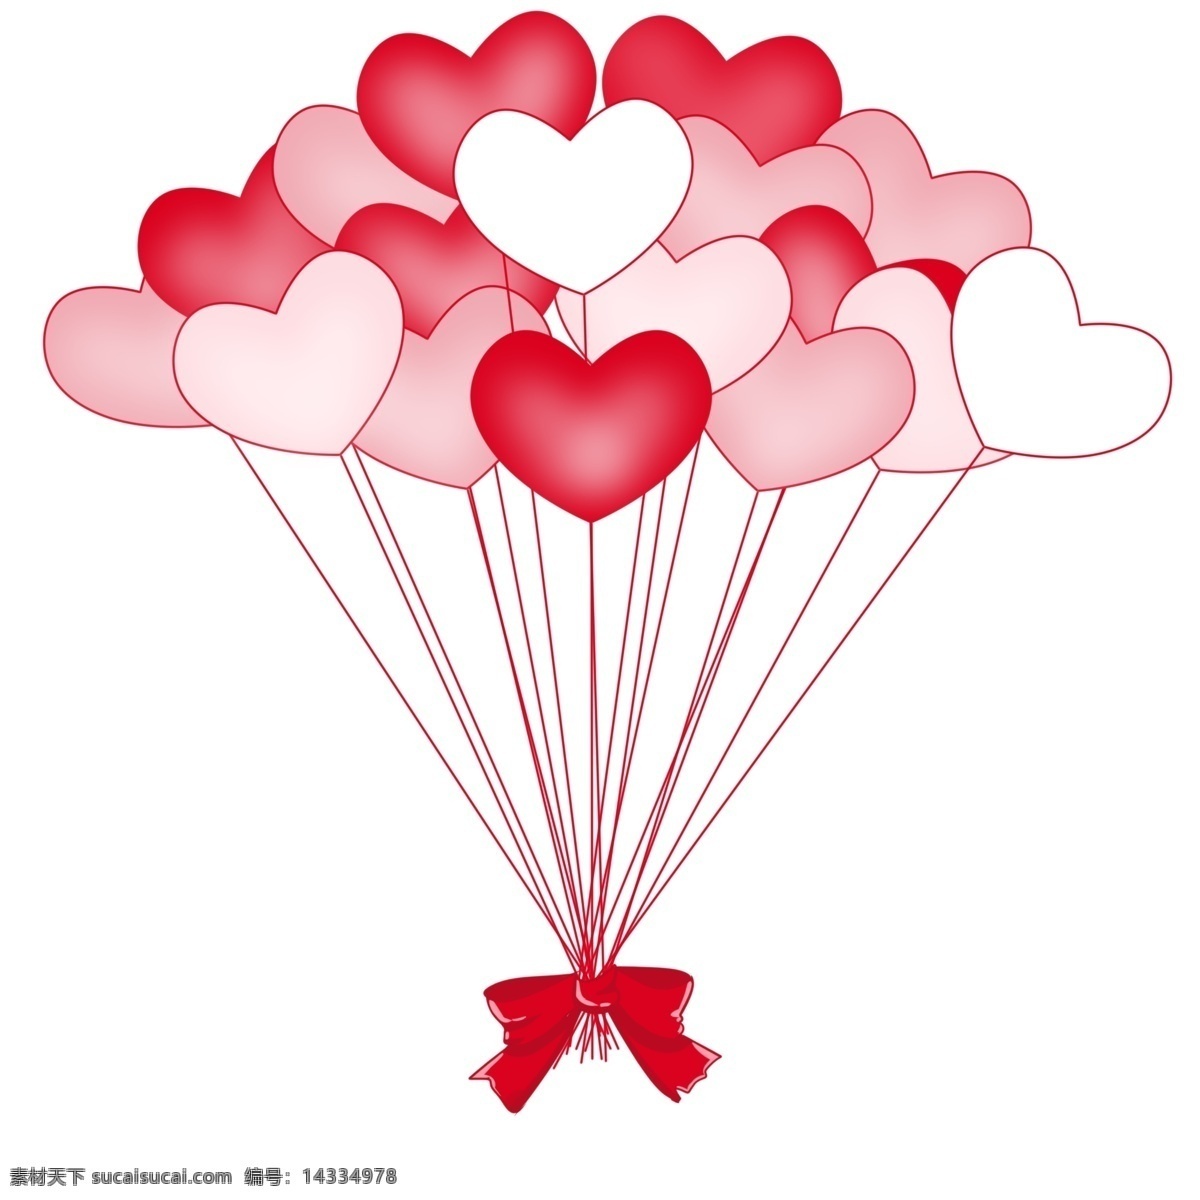 红色 心形 气球 彩带 彩色 蝴蝶结 浪漫 氢气球 唯美 花纹 amp 背景 免 抠 图